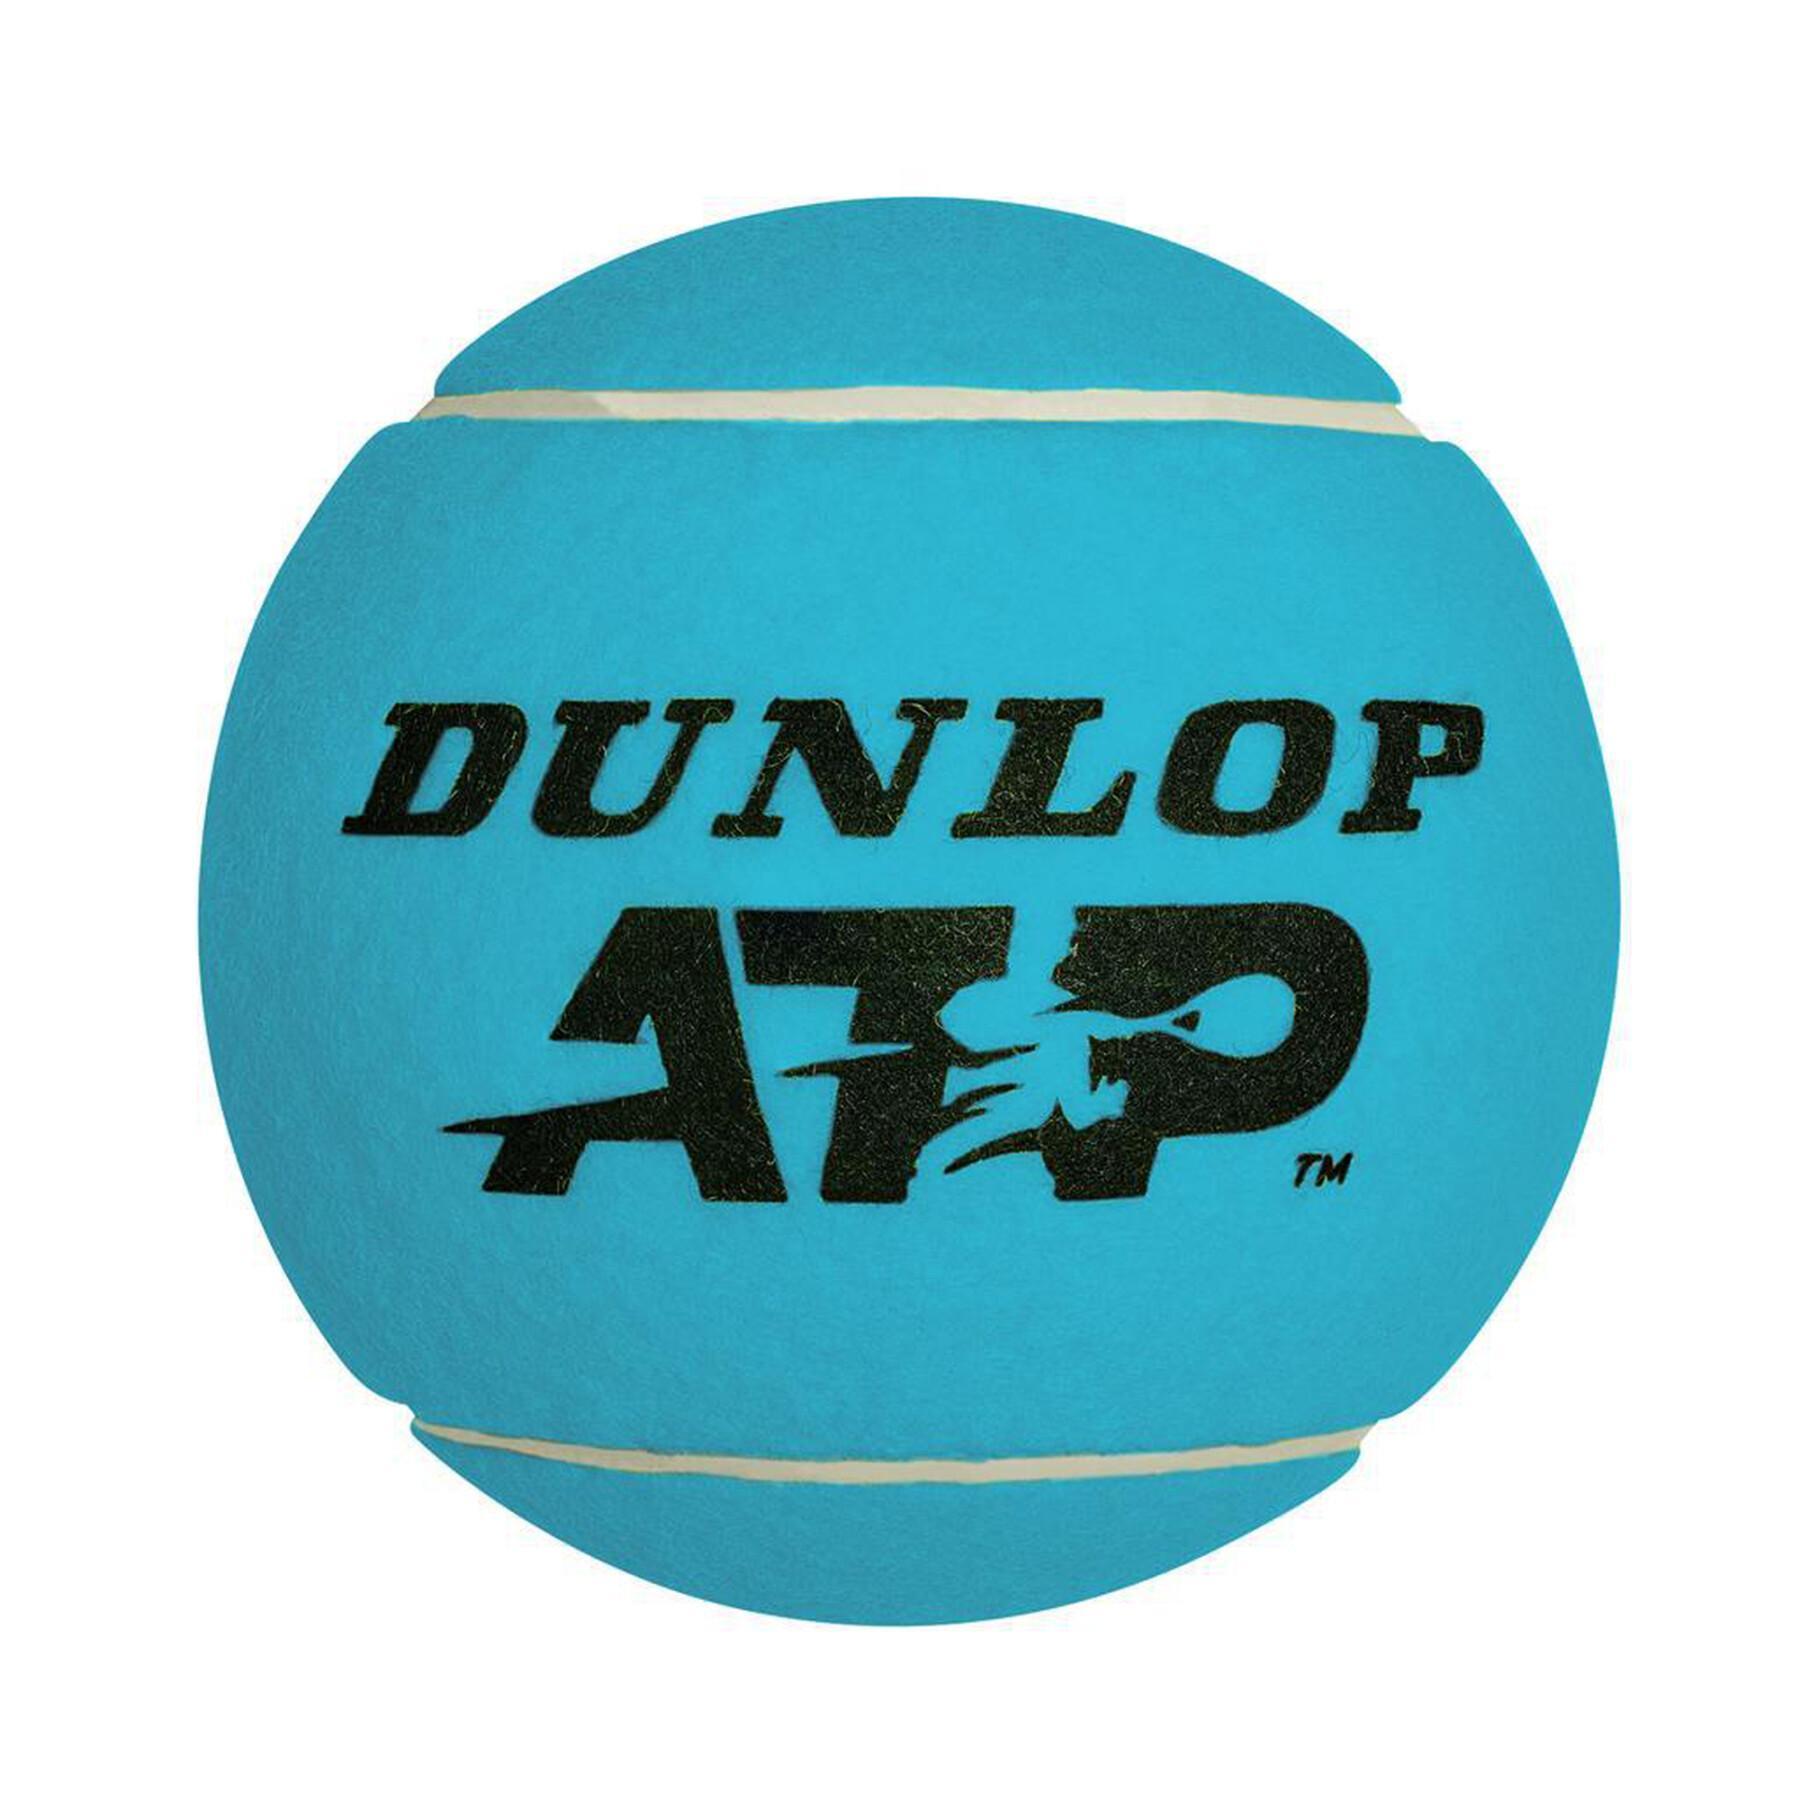 Jättestor tennisboll Dunlop